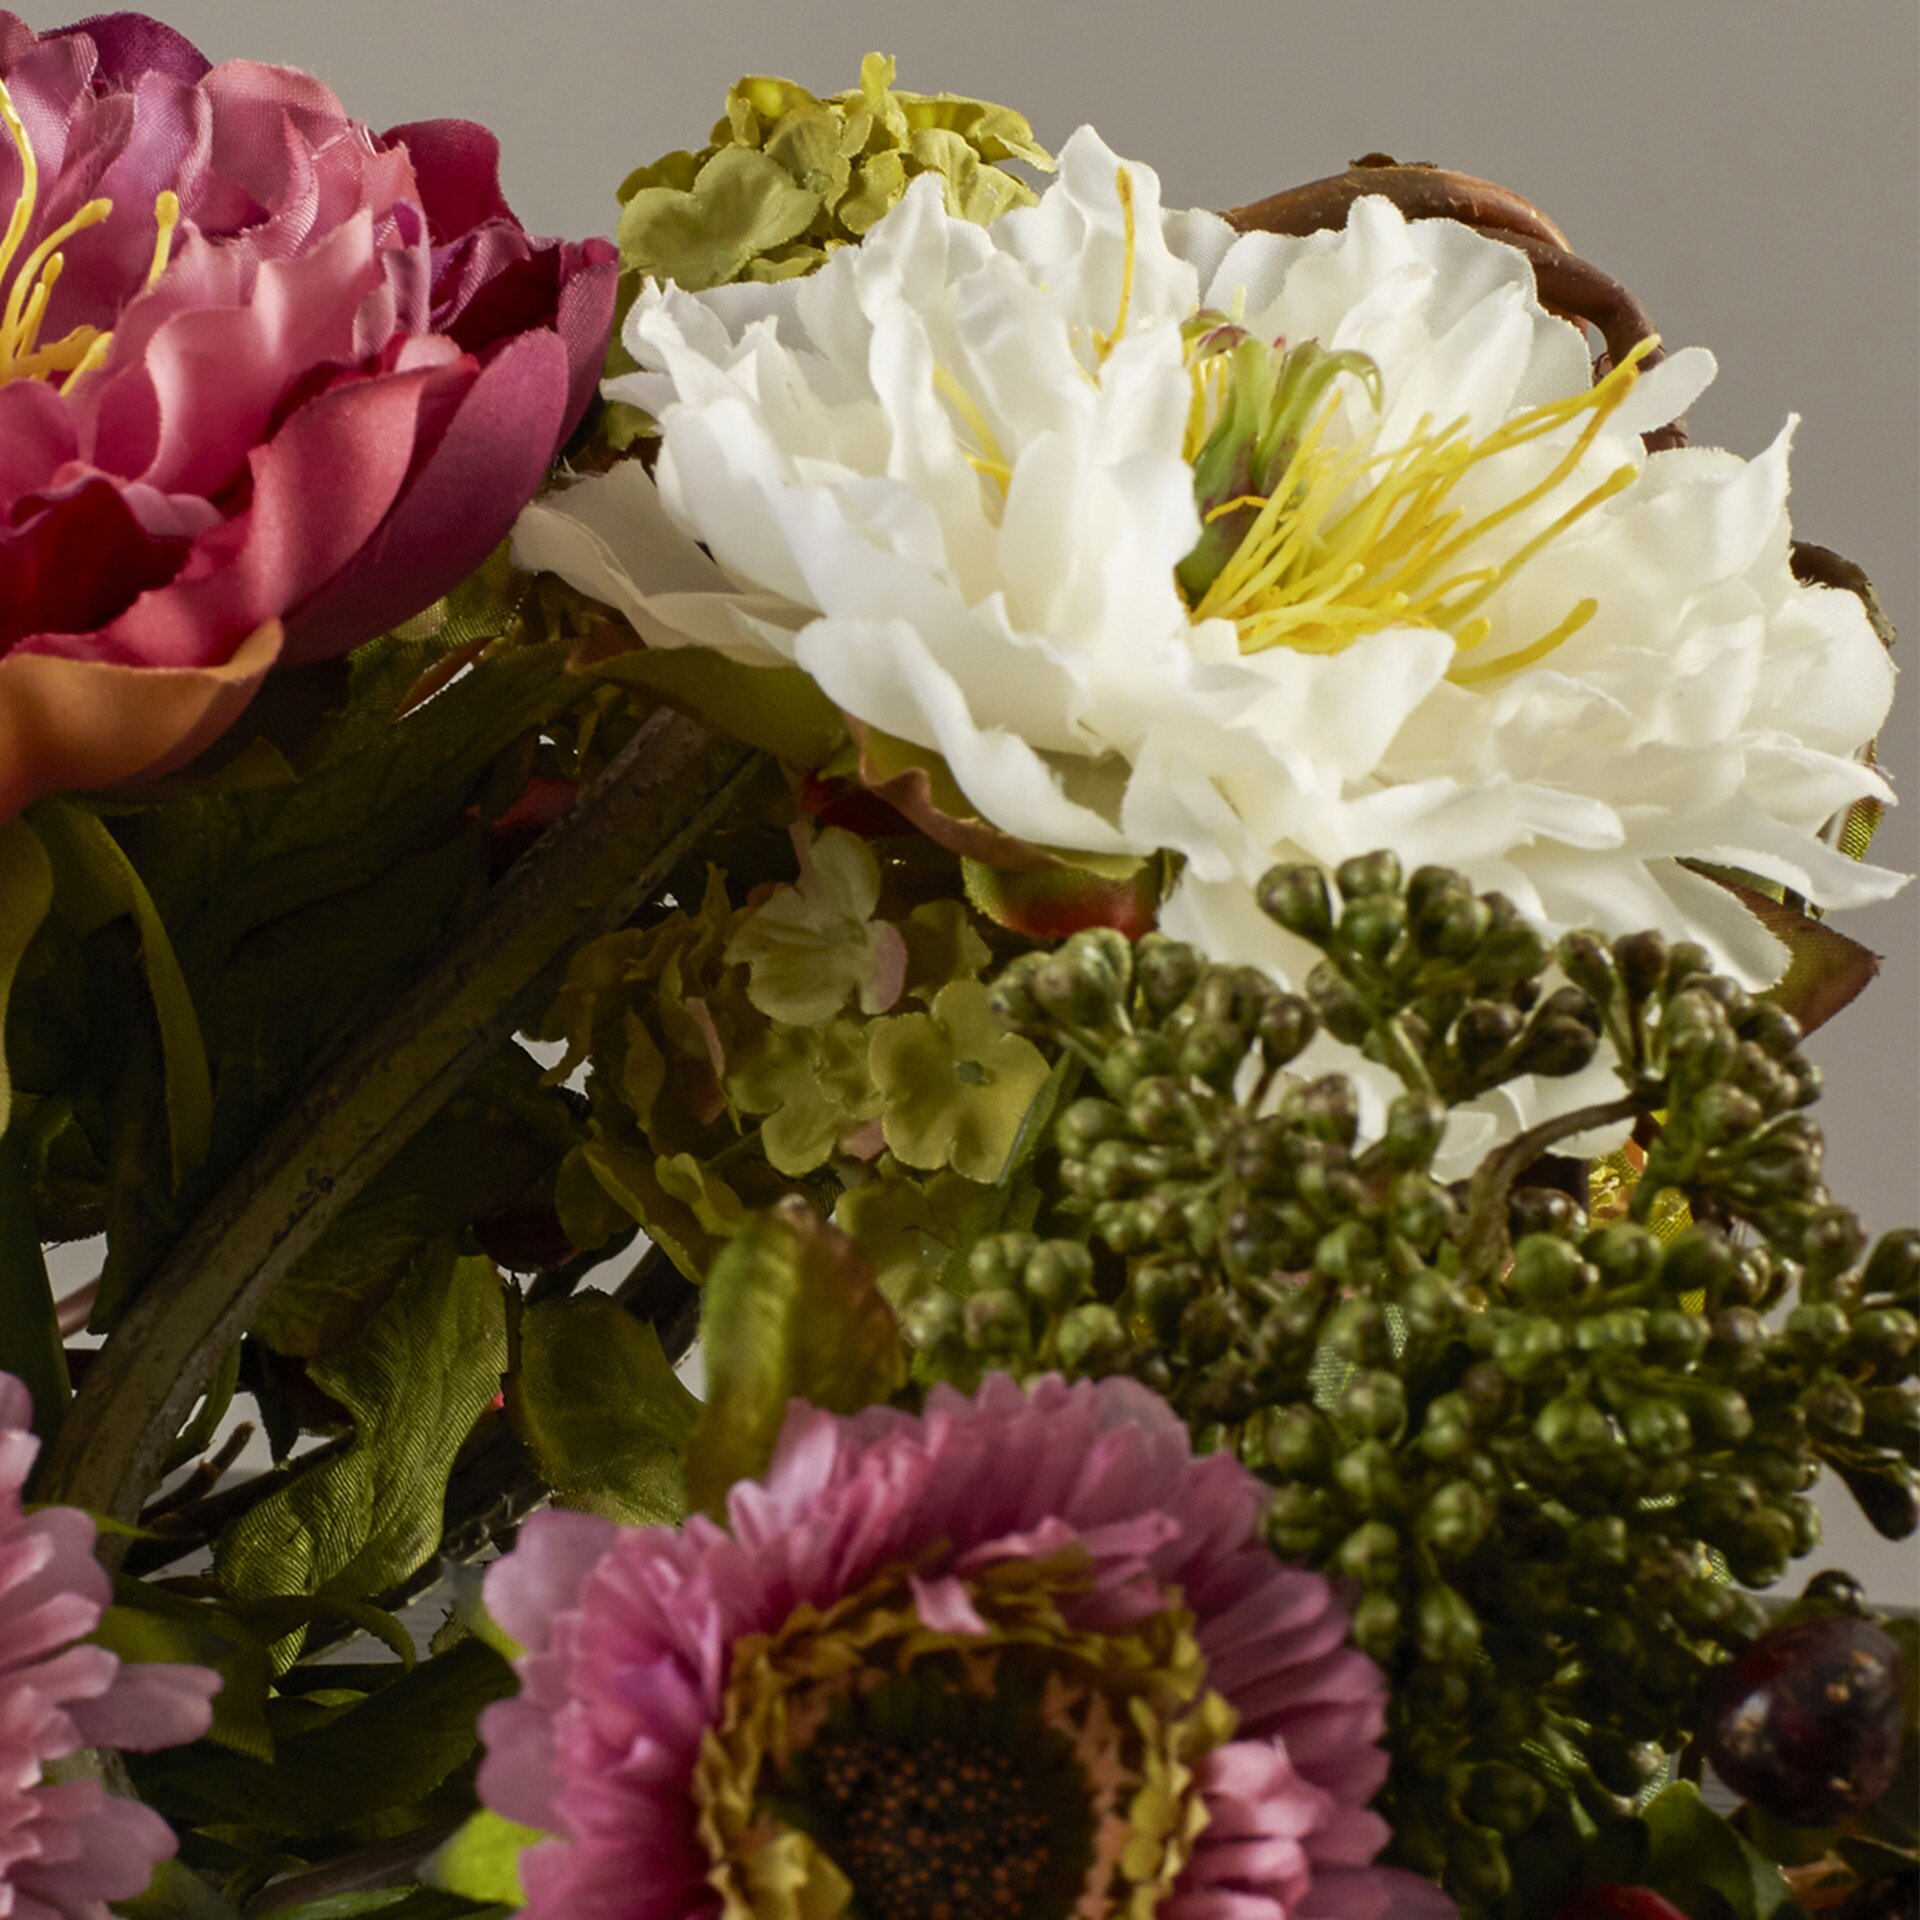 August Grove Silk Flower Mixed Peony Centerpiece And Reviews Wayfair